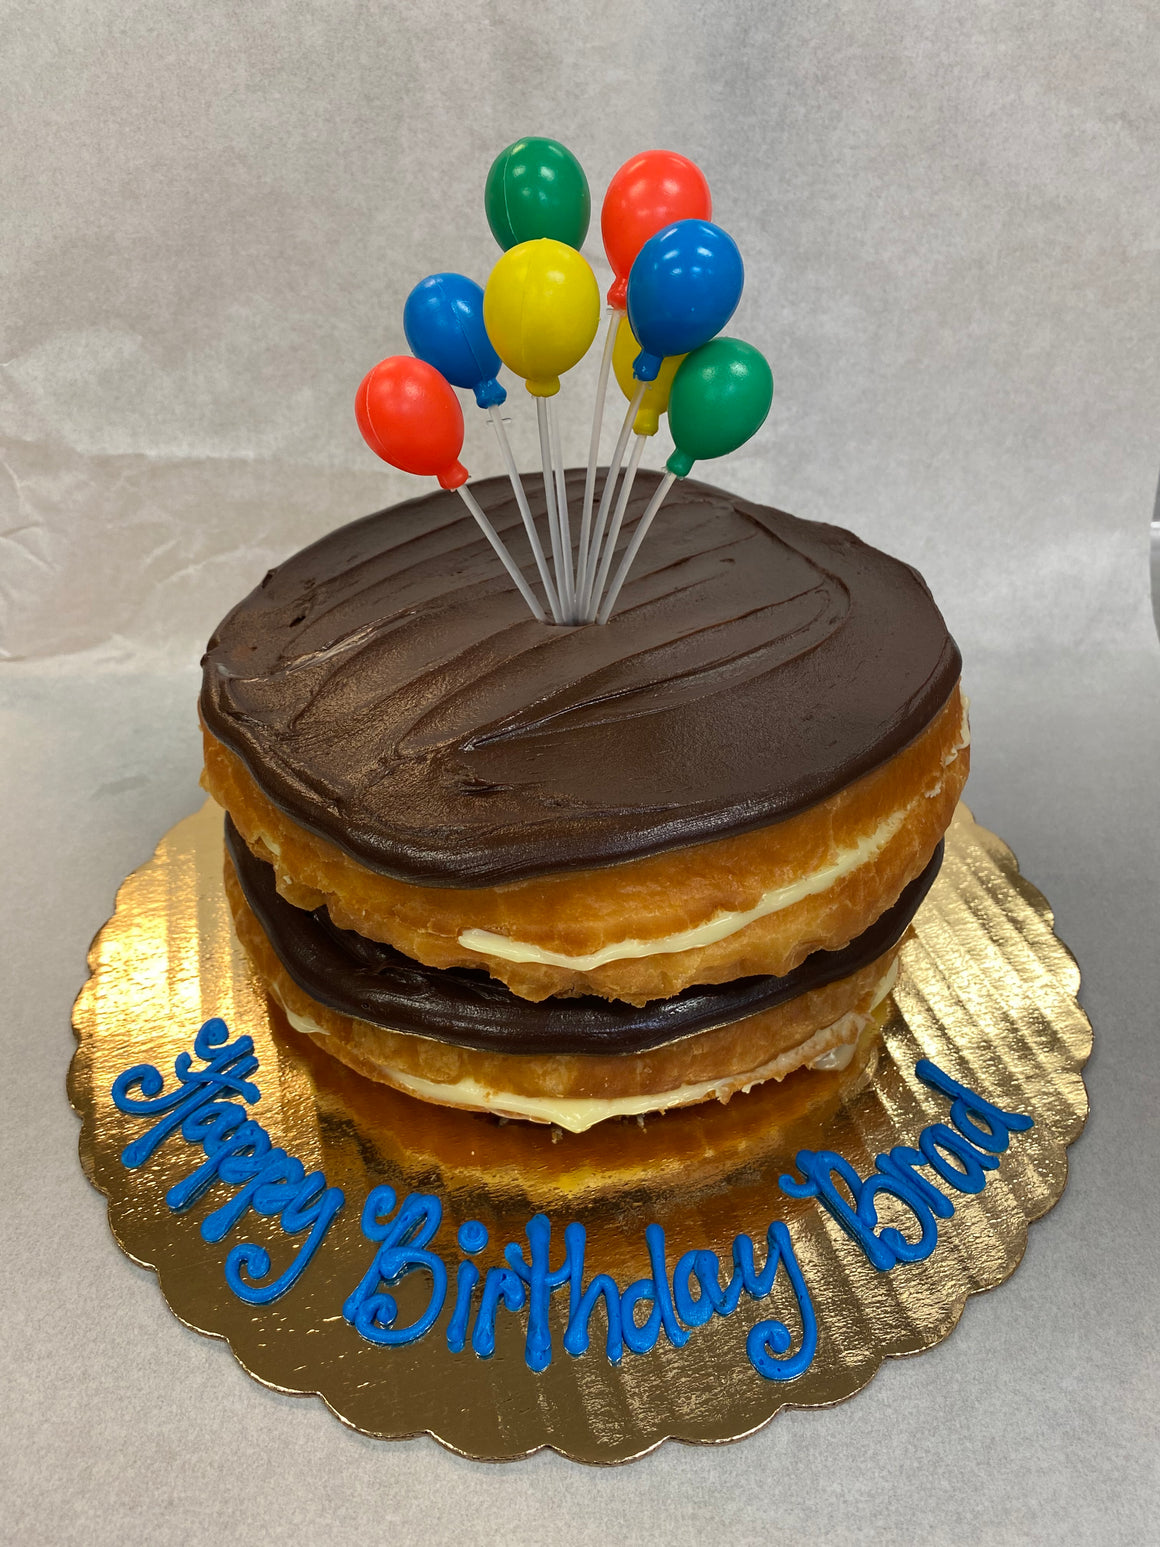 Jumbo Birthday Bismark Cake